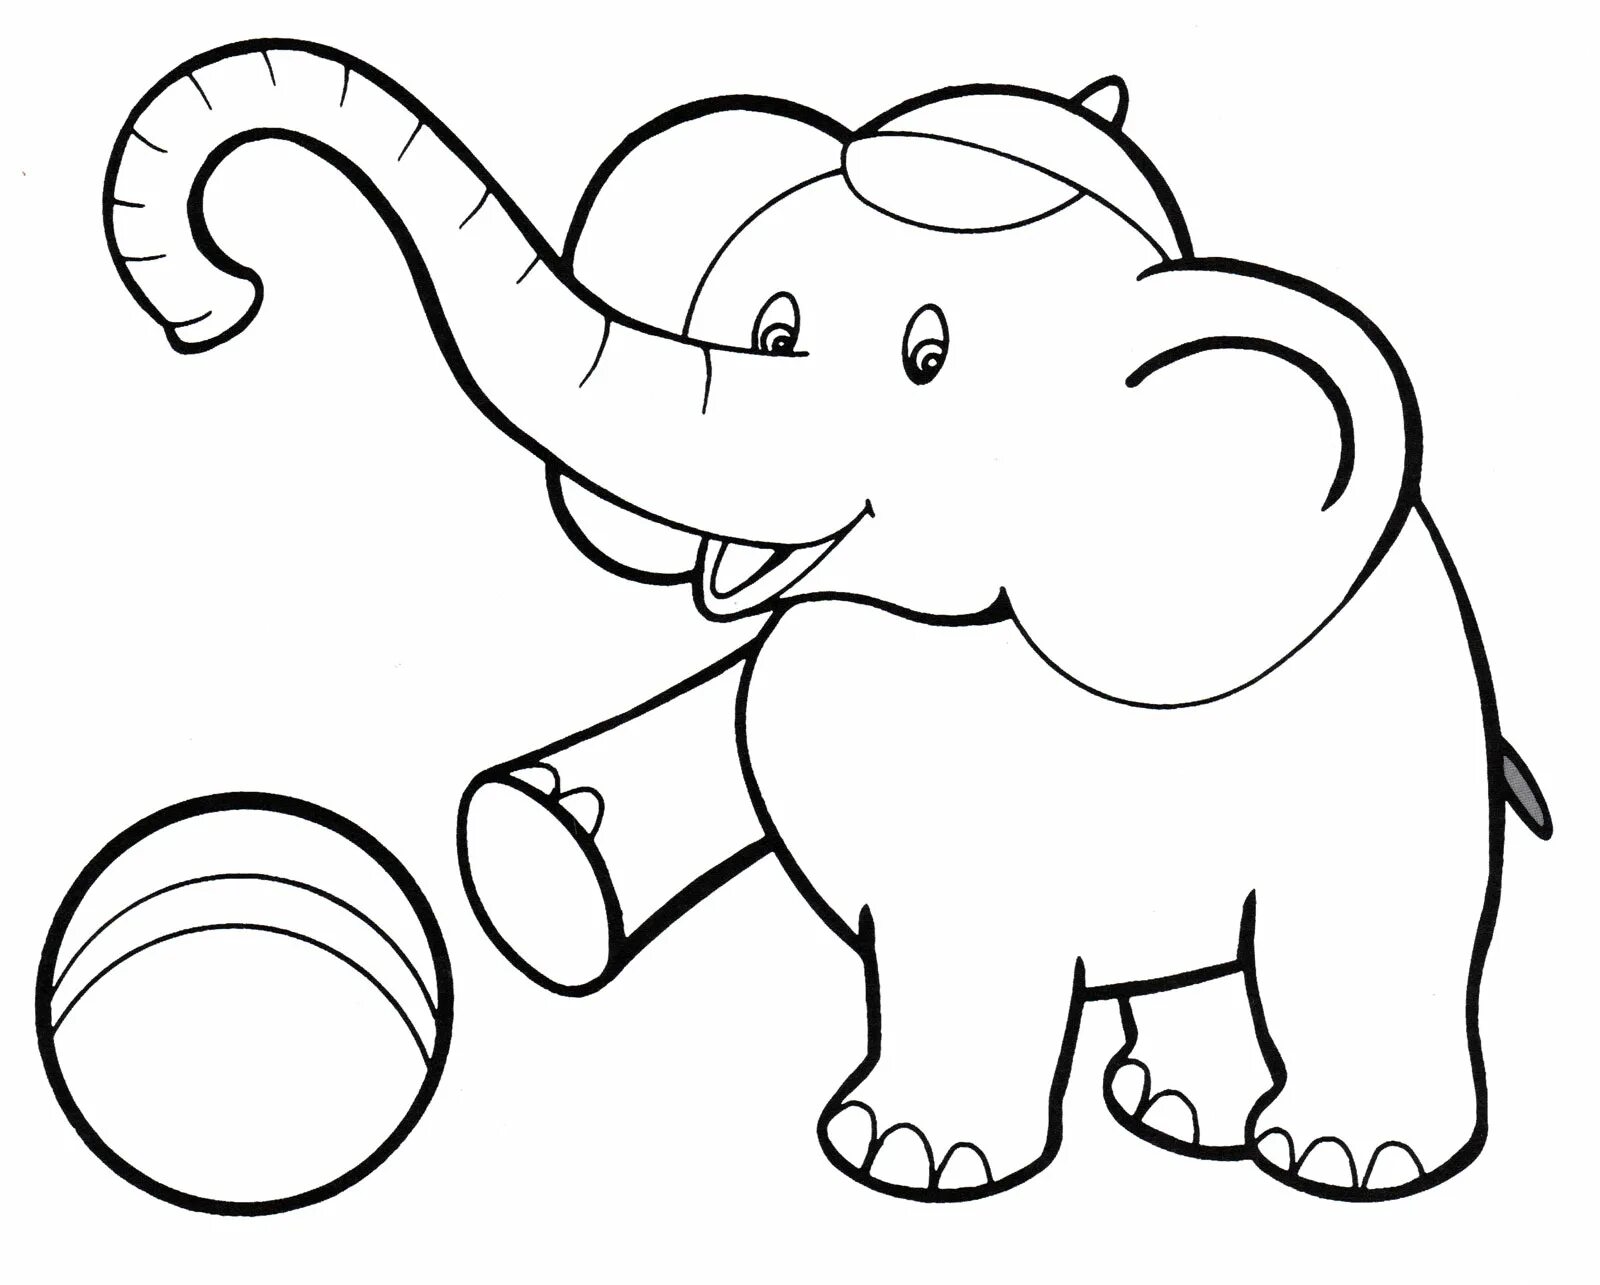 Красочная игра-раскраска слонов